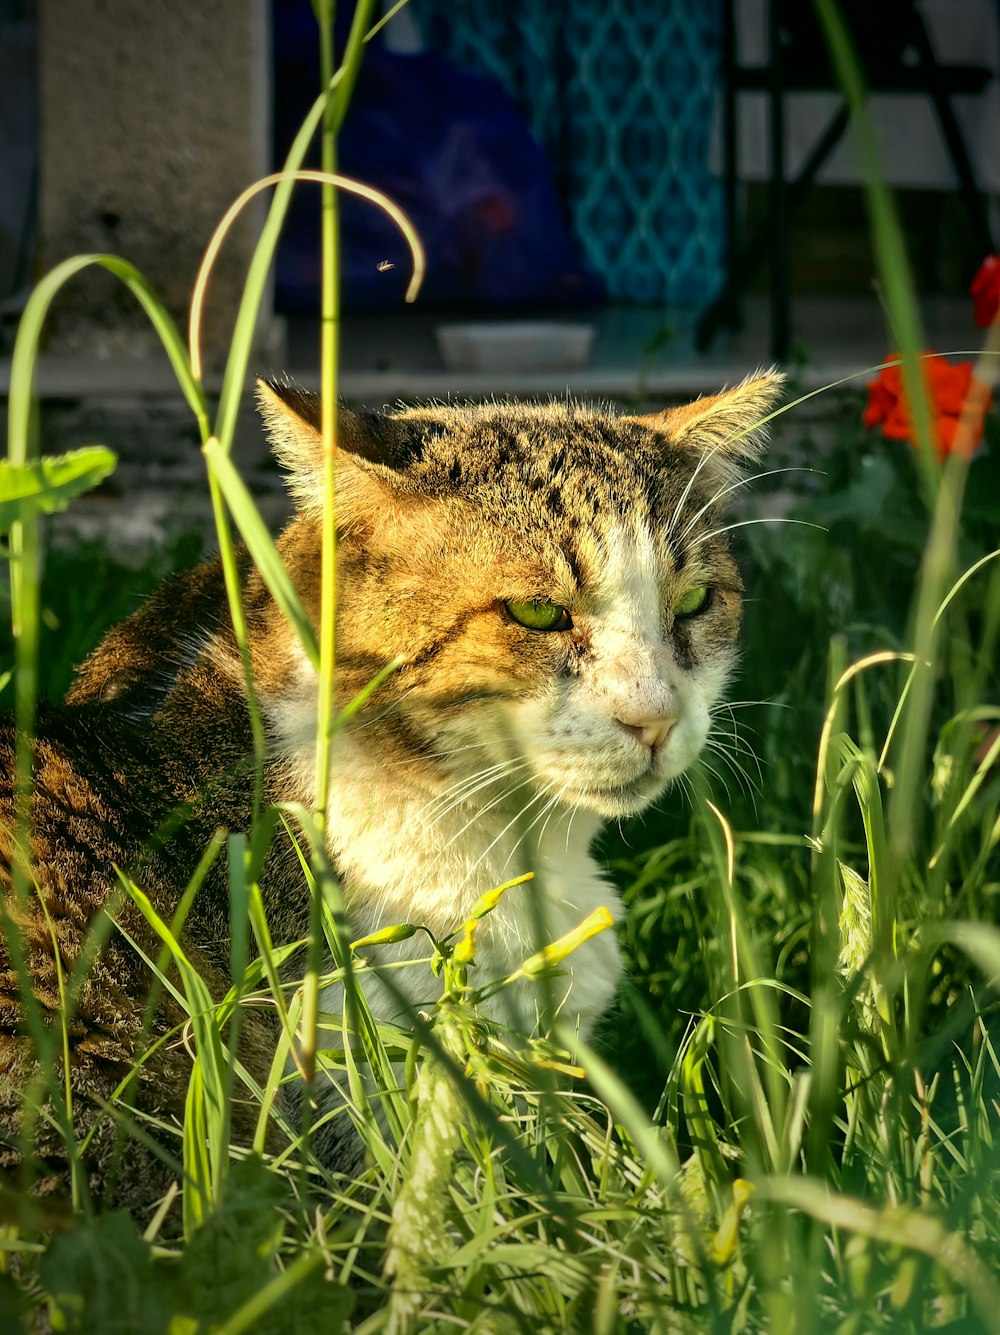 풀밭에 앉아있는 고양이